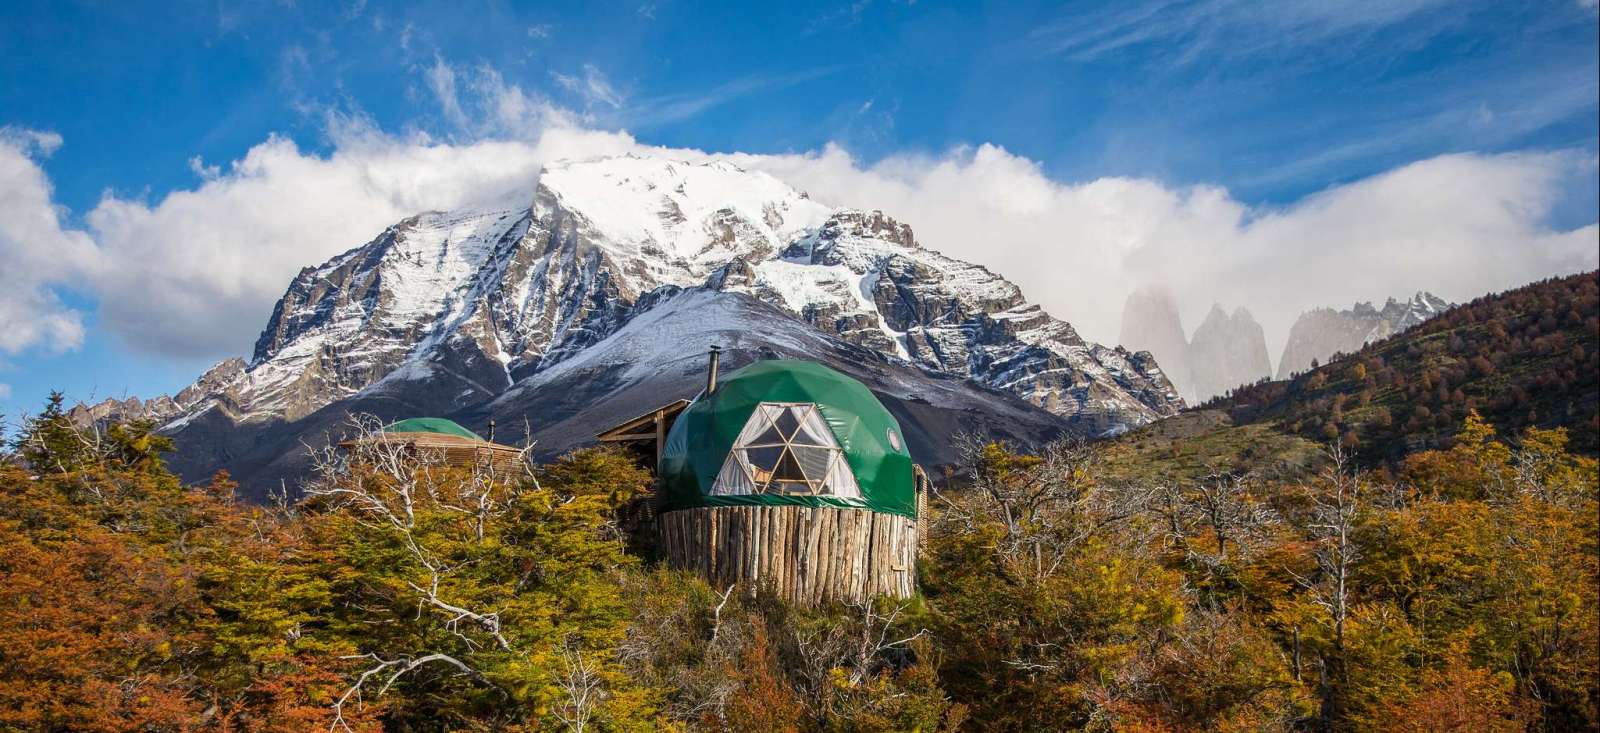 Voyage en véhicule : La Patagonie sous les étoiles